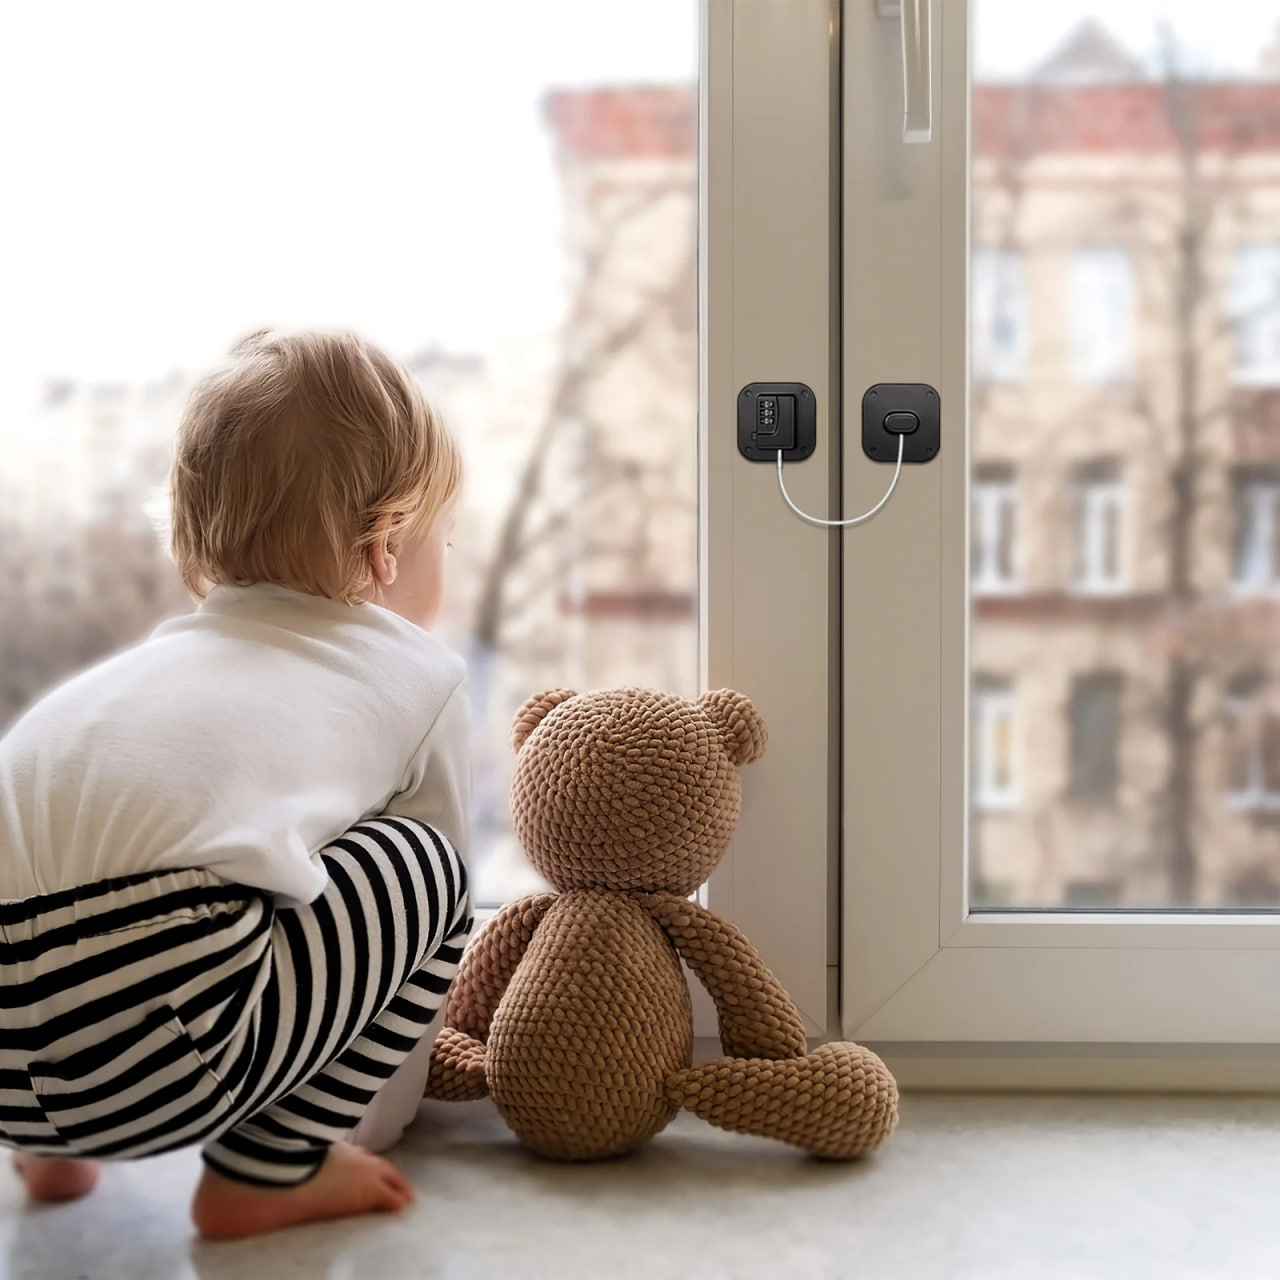 Открытое окно – опасность для маленьких детей